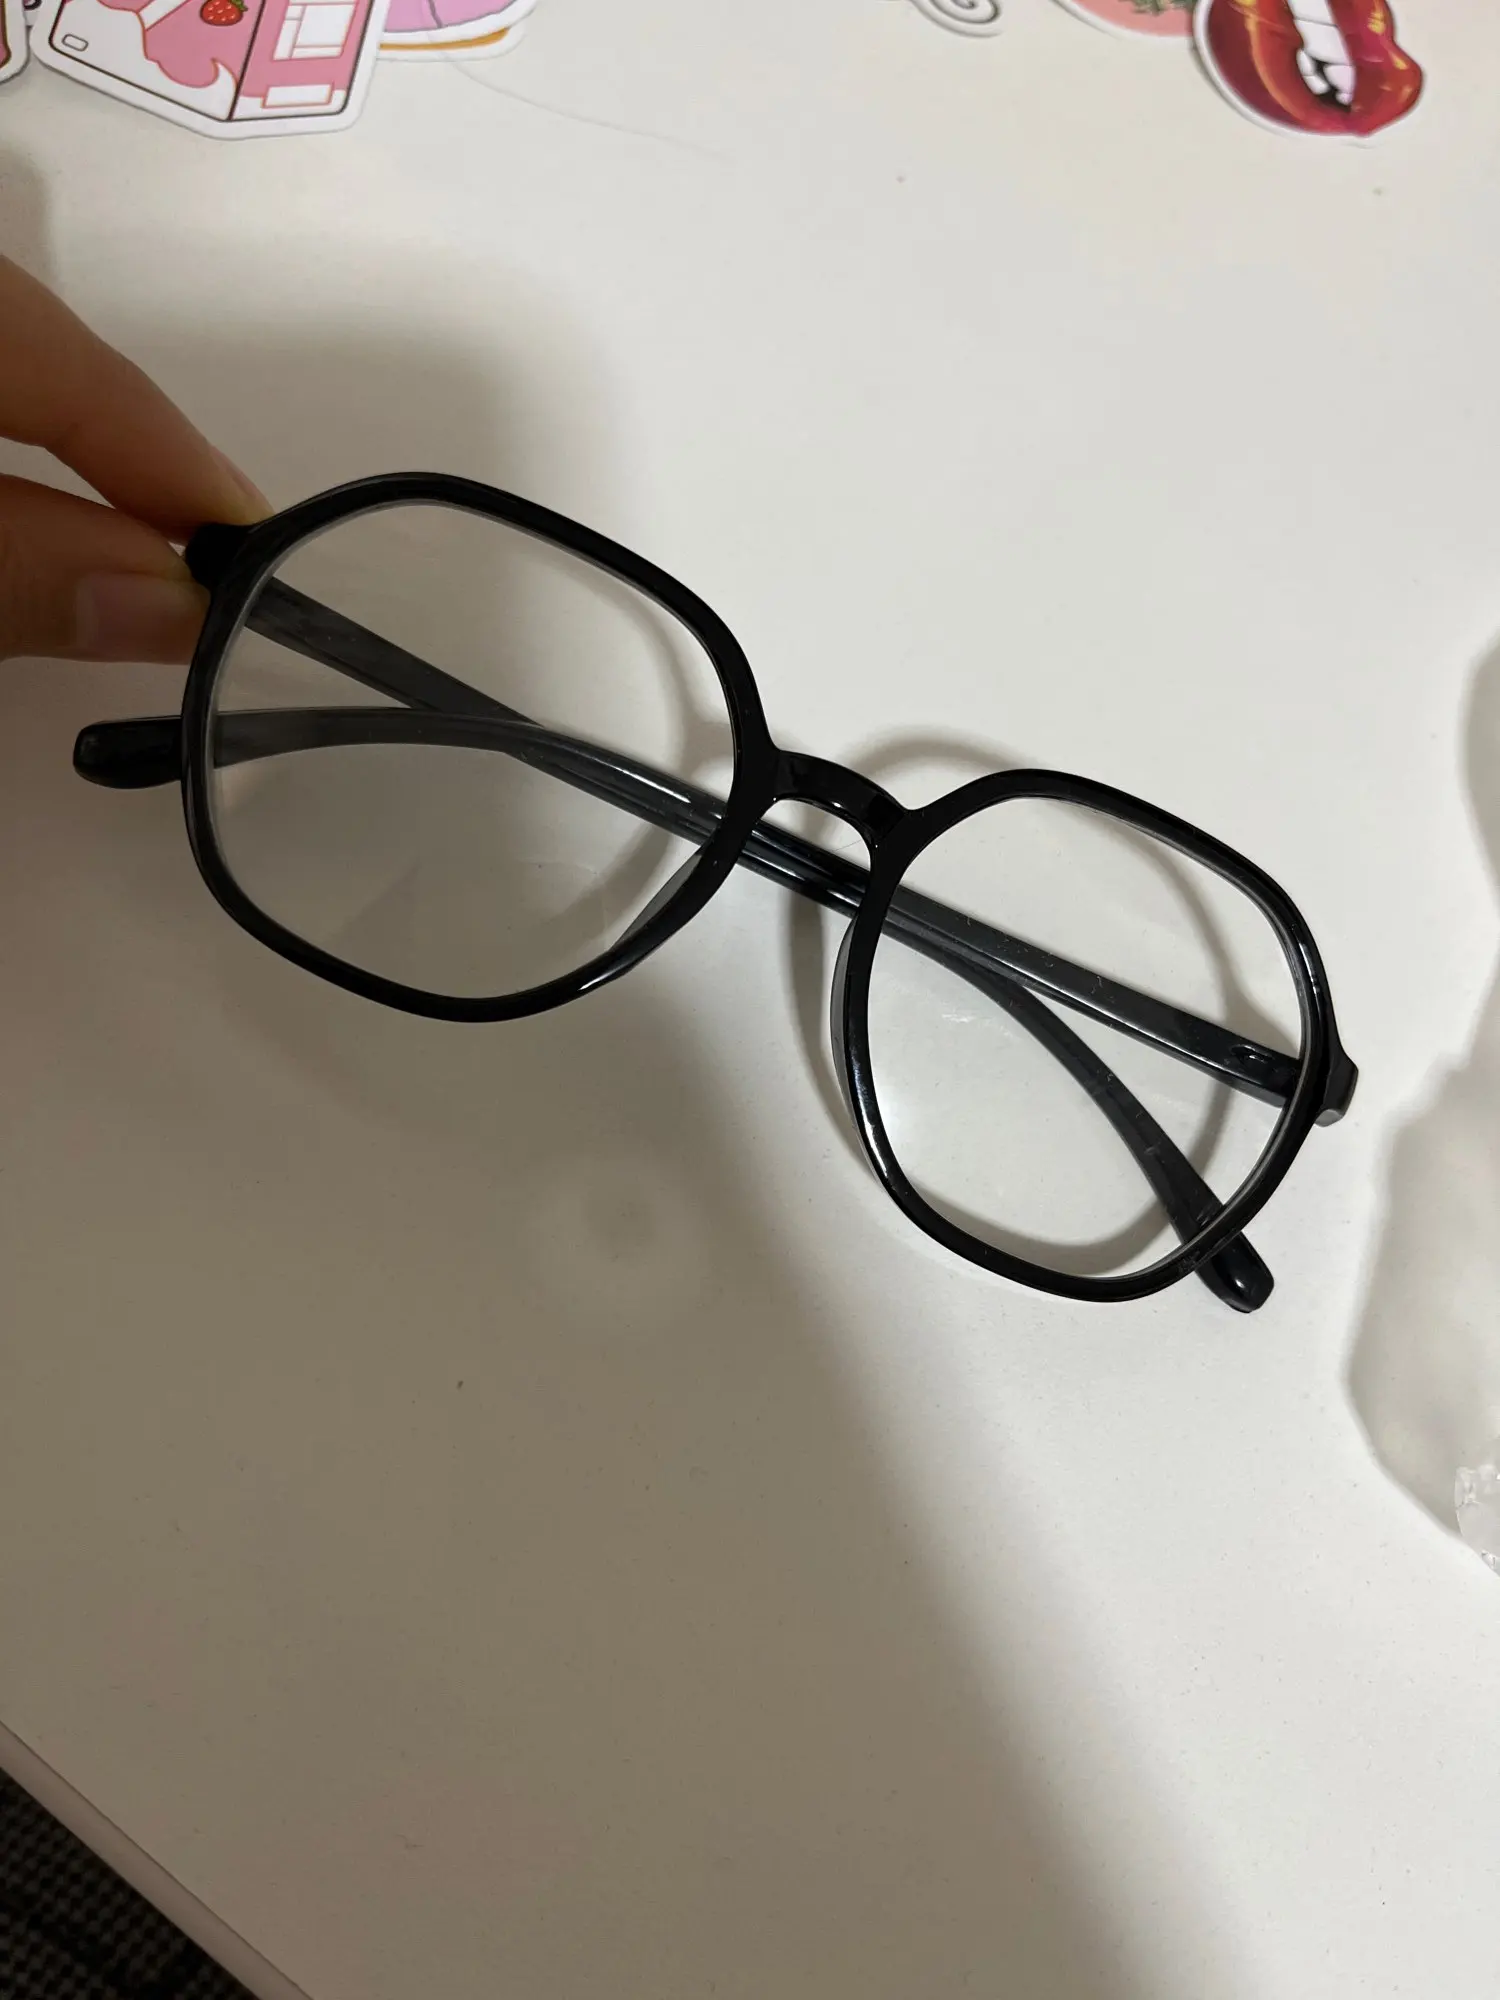 Transparenta läsglasögon kvinnliga högupplösta anti-blå ljus glasögon